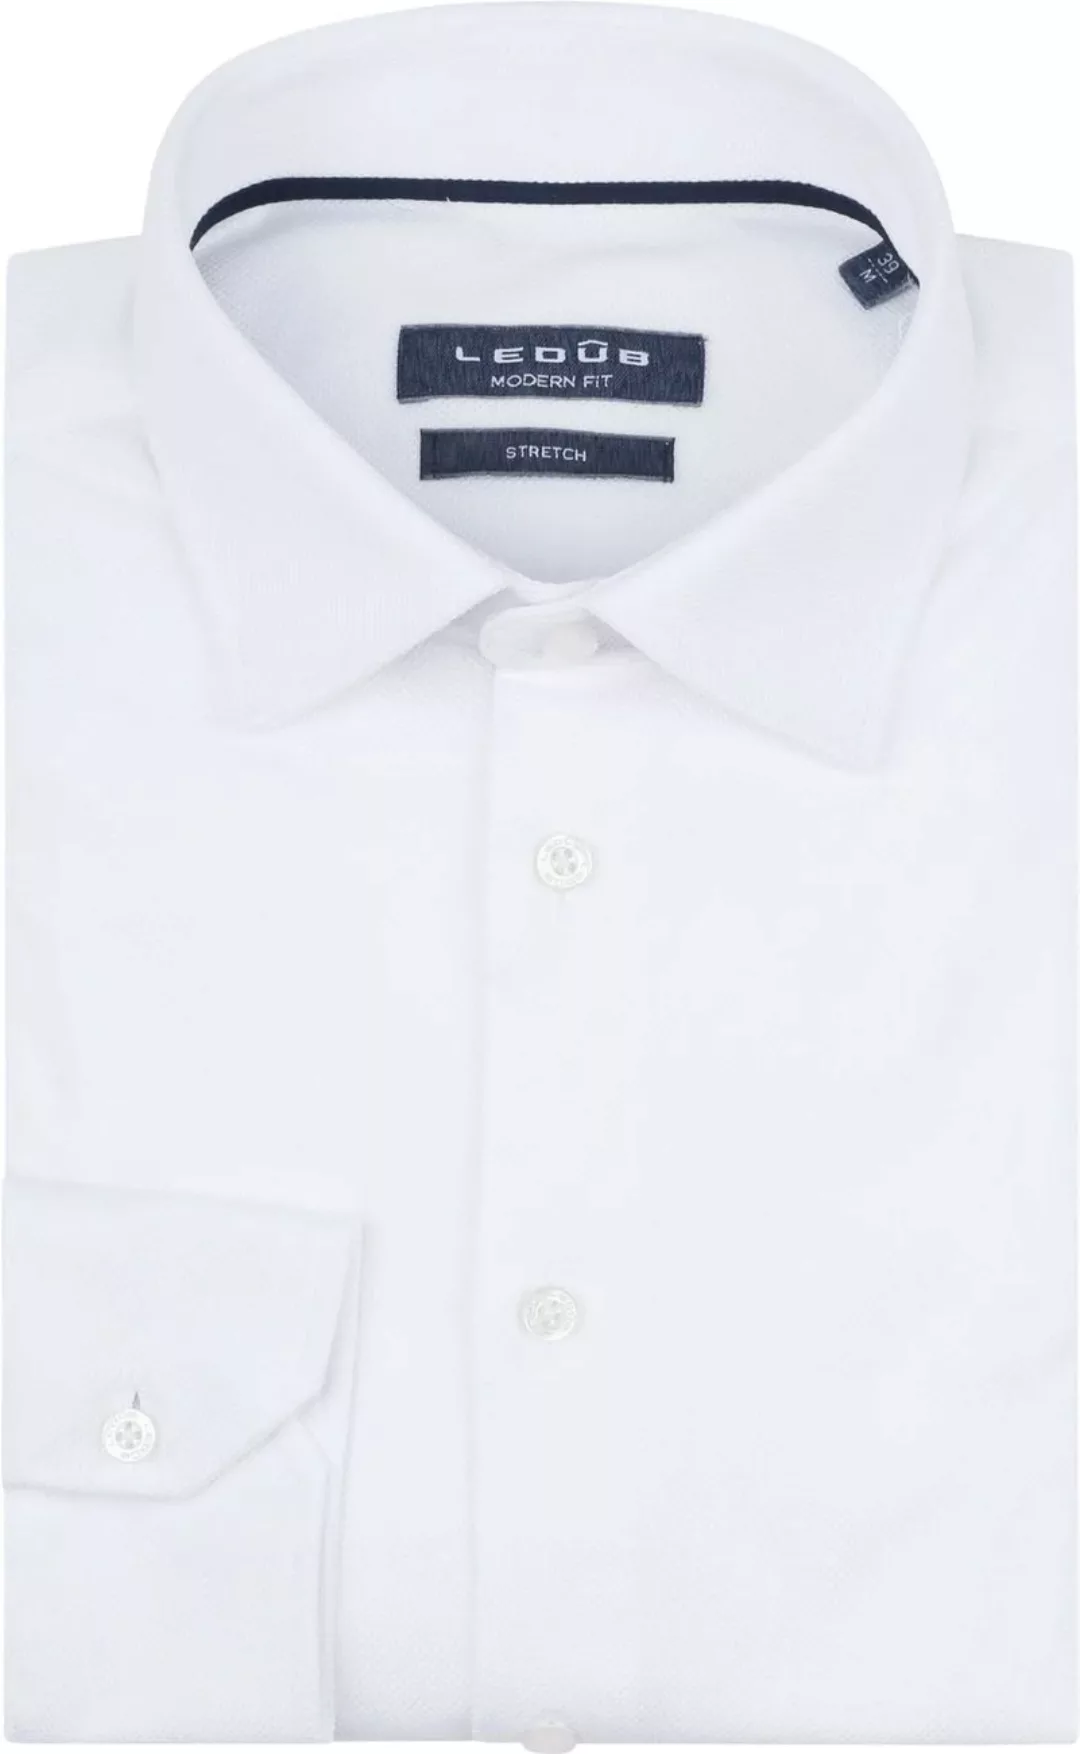 Ledub Tricot Hemd Weiß - Größe 48 günstig online kaufen